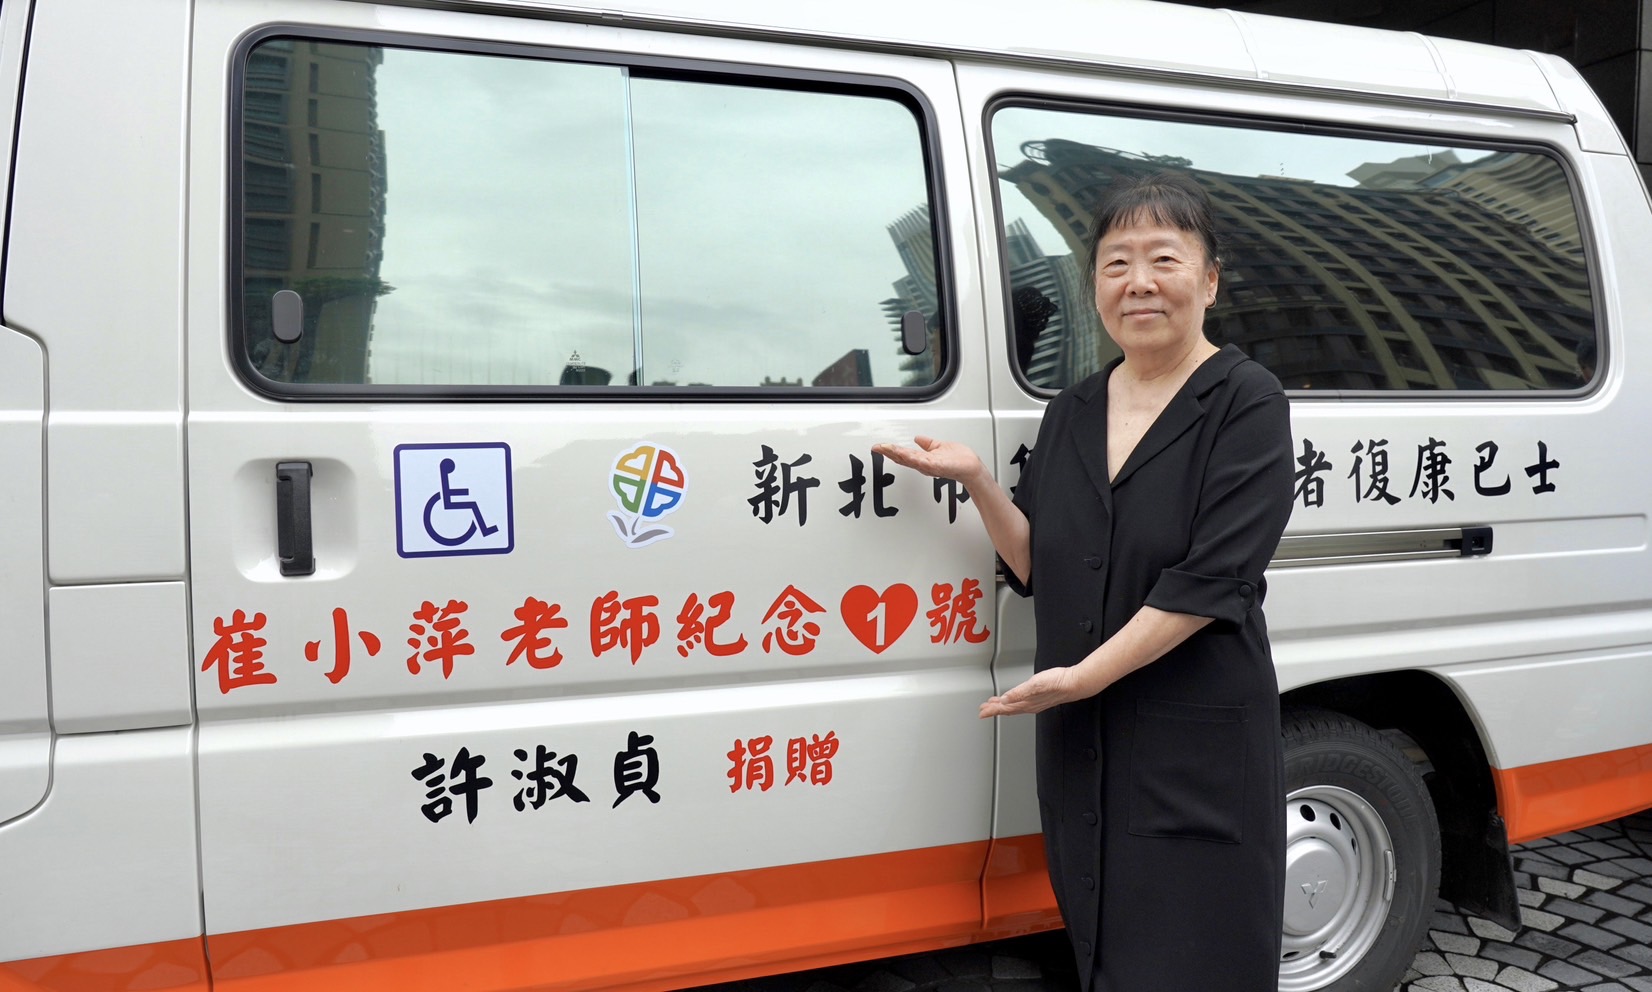 資深廣播人崔小萍遺愛人間 義女捐贈3輛復康巴士